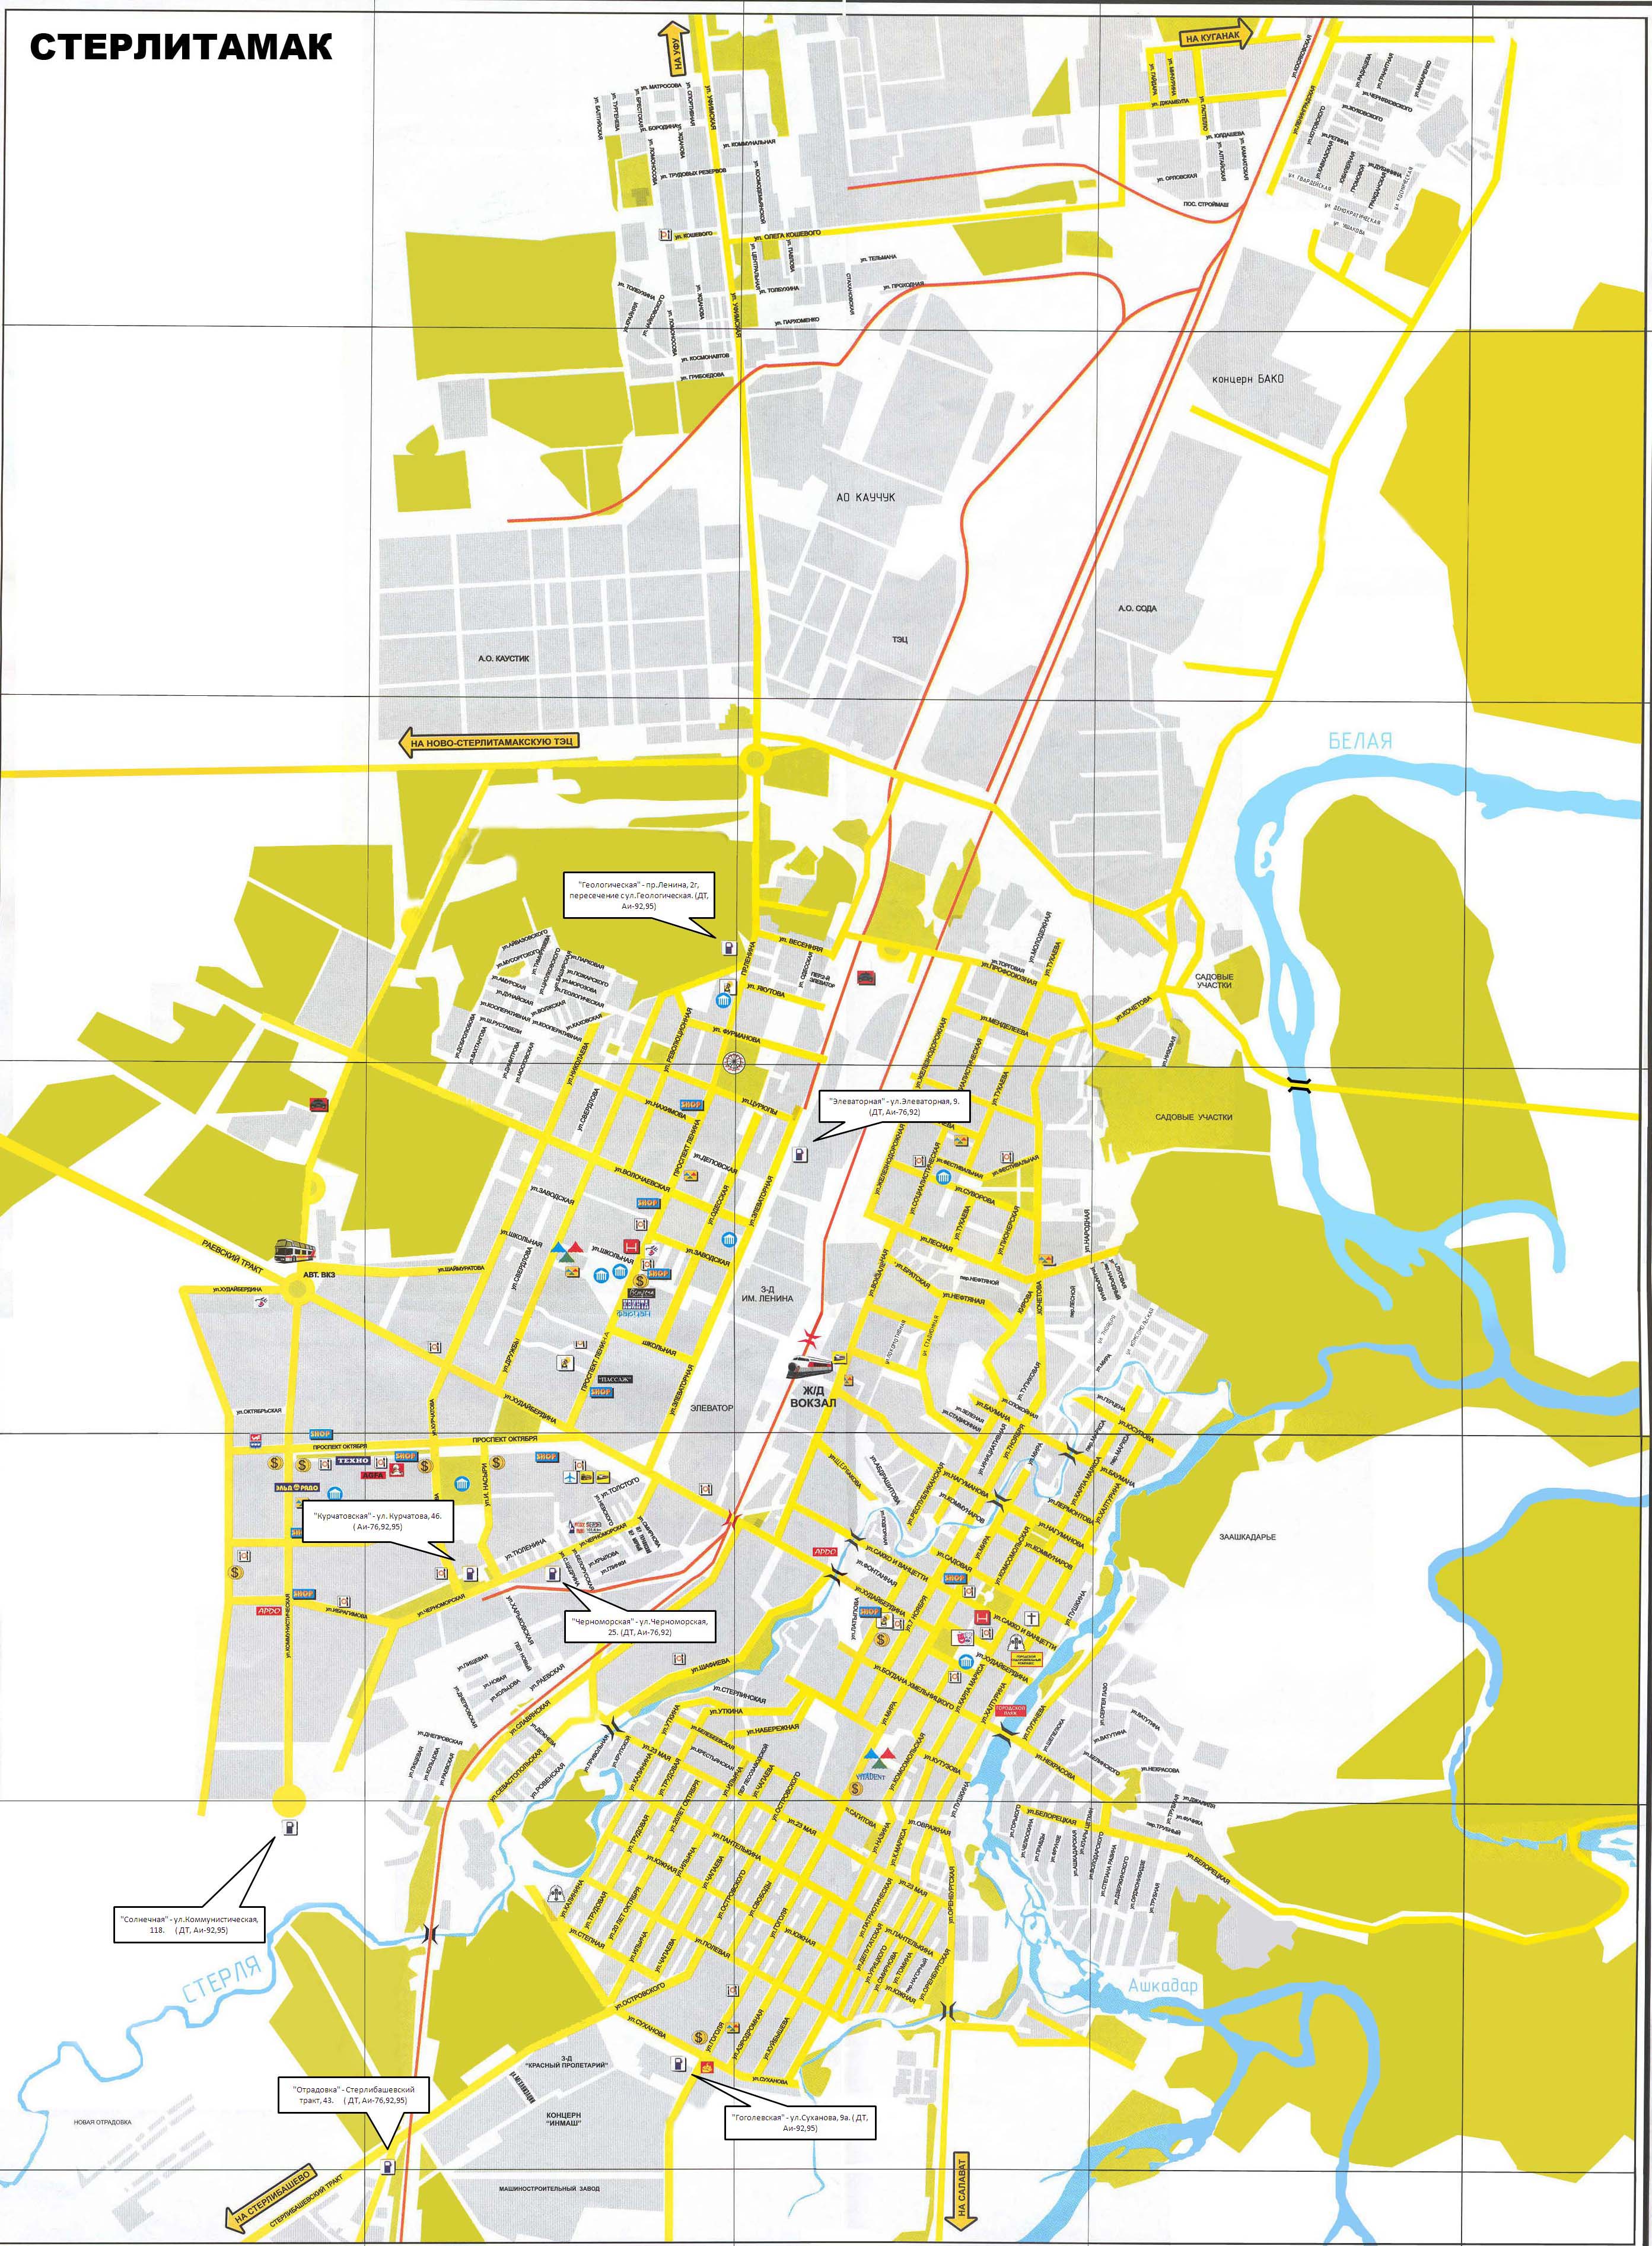 Недвижимость РБ - Подробная большая карта Стерлитамака с названием улиц,карта окрестностей г. Стерлитамак